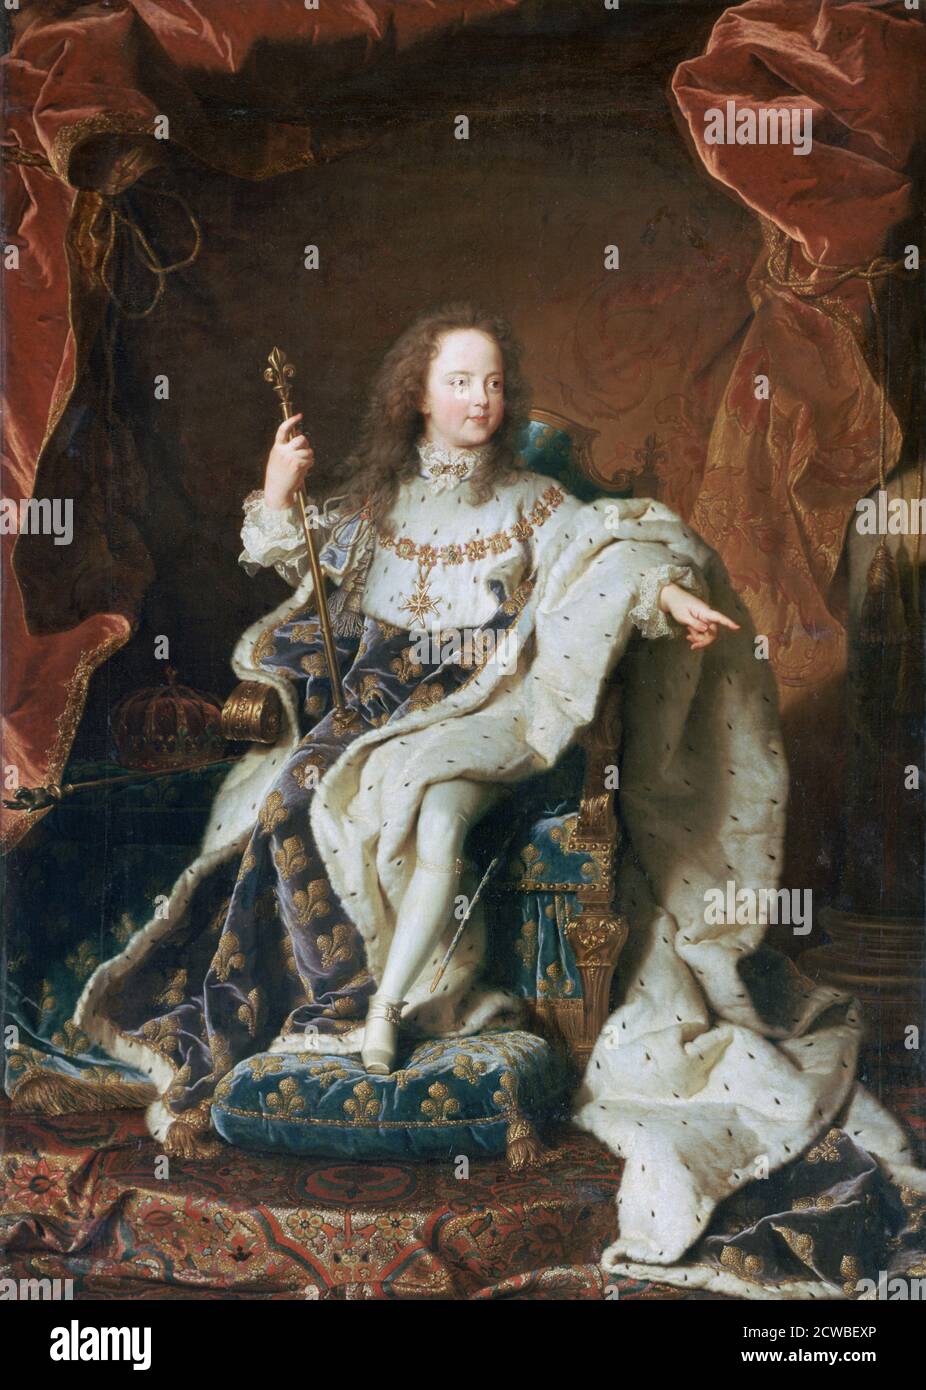 Luigi XV all'età di cinque anni, c1715. Artista: Hyacinthe Rigaud. Hyacinthe Rigaud (1659-1743) è stato un pittore barocco francese più famoso per i suoi ritratti di Luigi XIV e di altri membri della nobiltà francese. Foto Stock